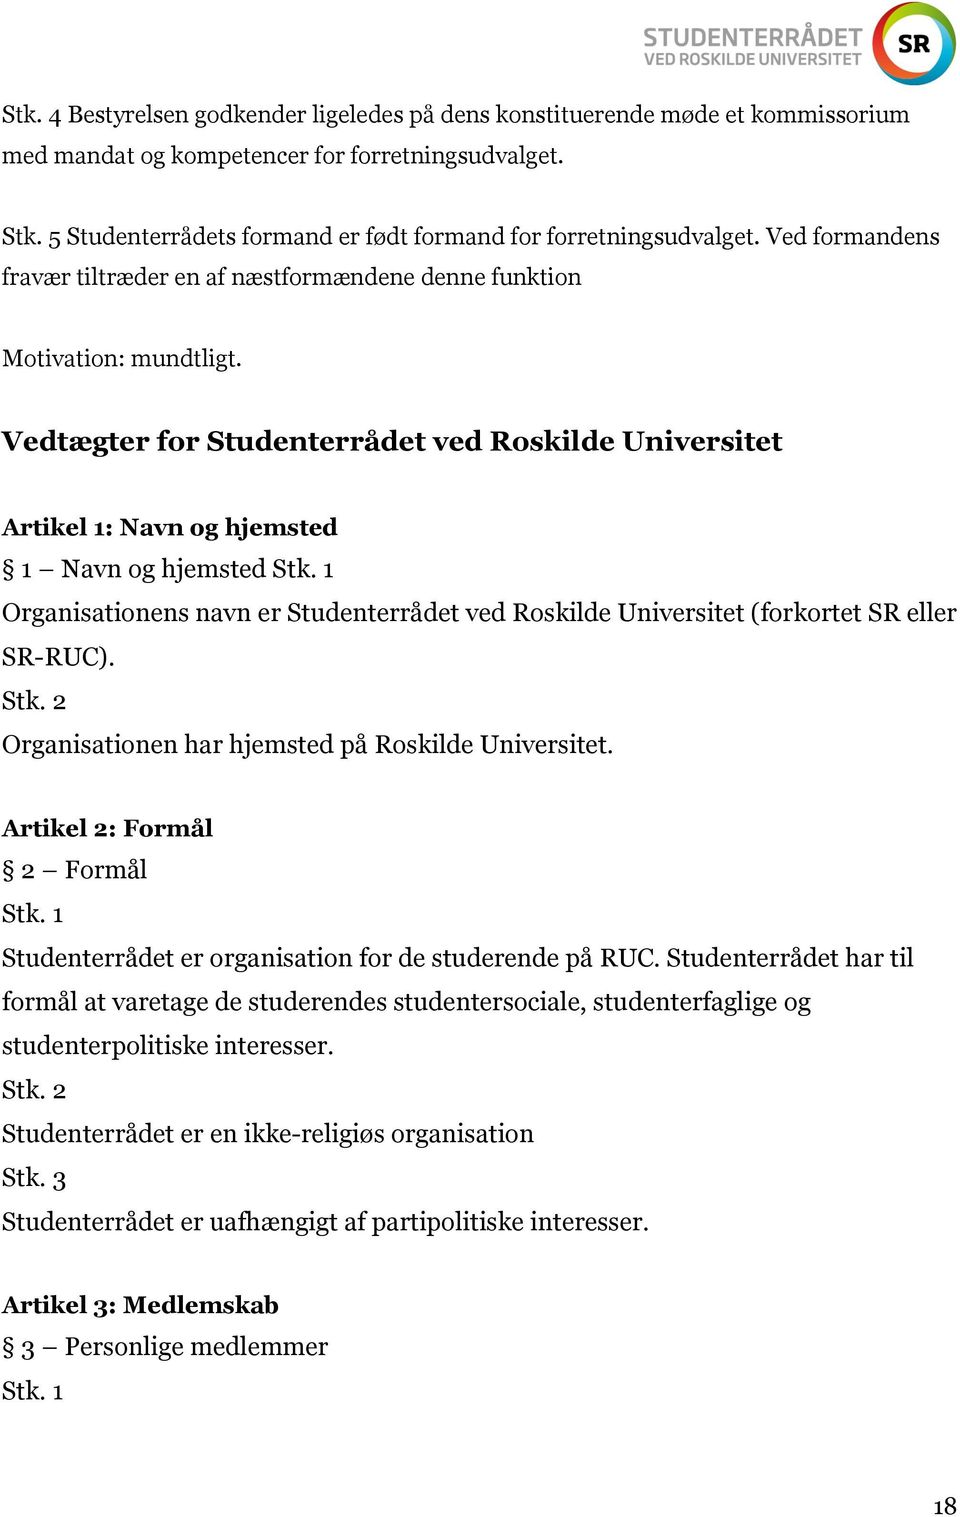 Vedtægter for Studenterrådet ved Roskilde Universitet Artikel 1: Navn og hjemsted 1 Navn og hjemsted Organisationens navn er Studenterrådet ved Roskilde Universitet (forkortet SR eller SR-RUC).